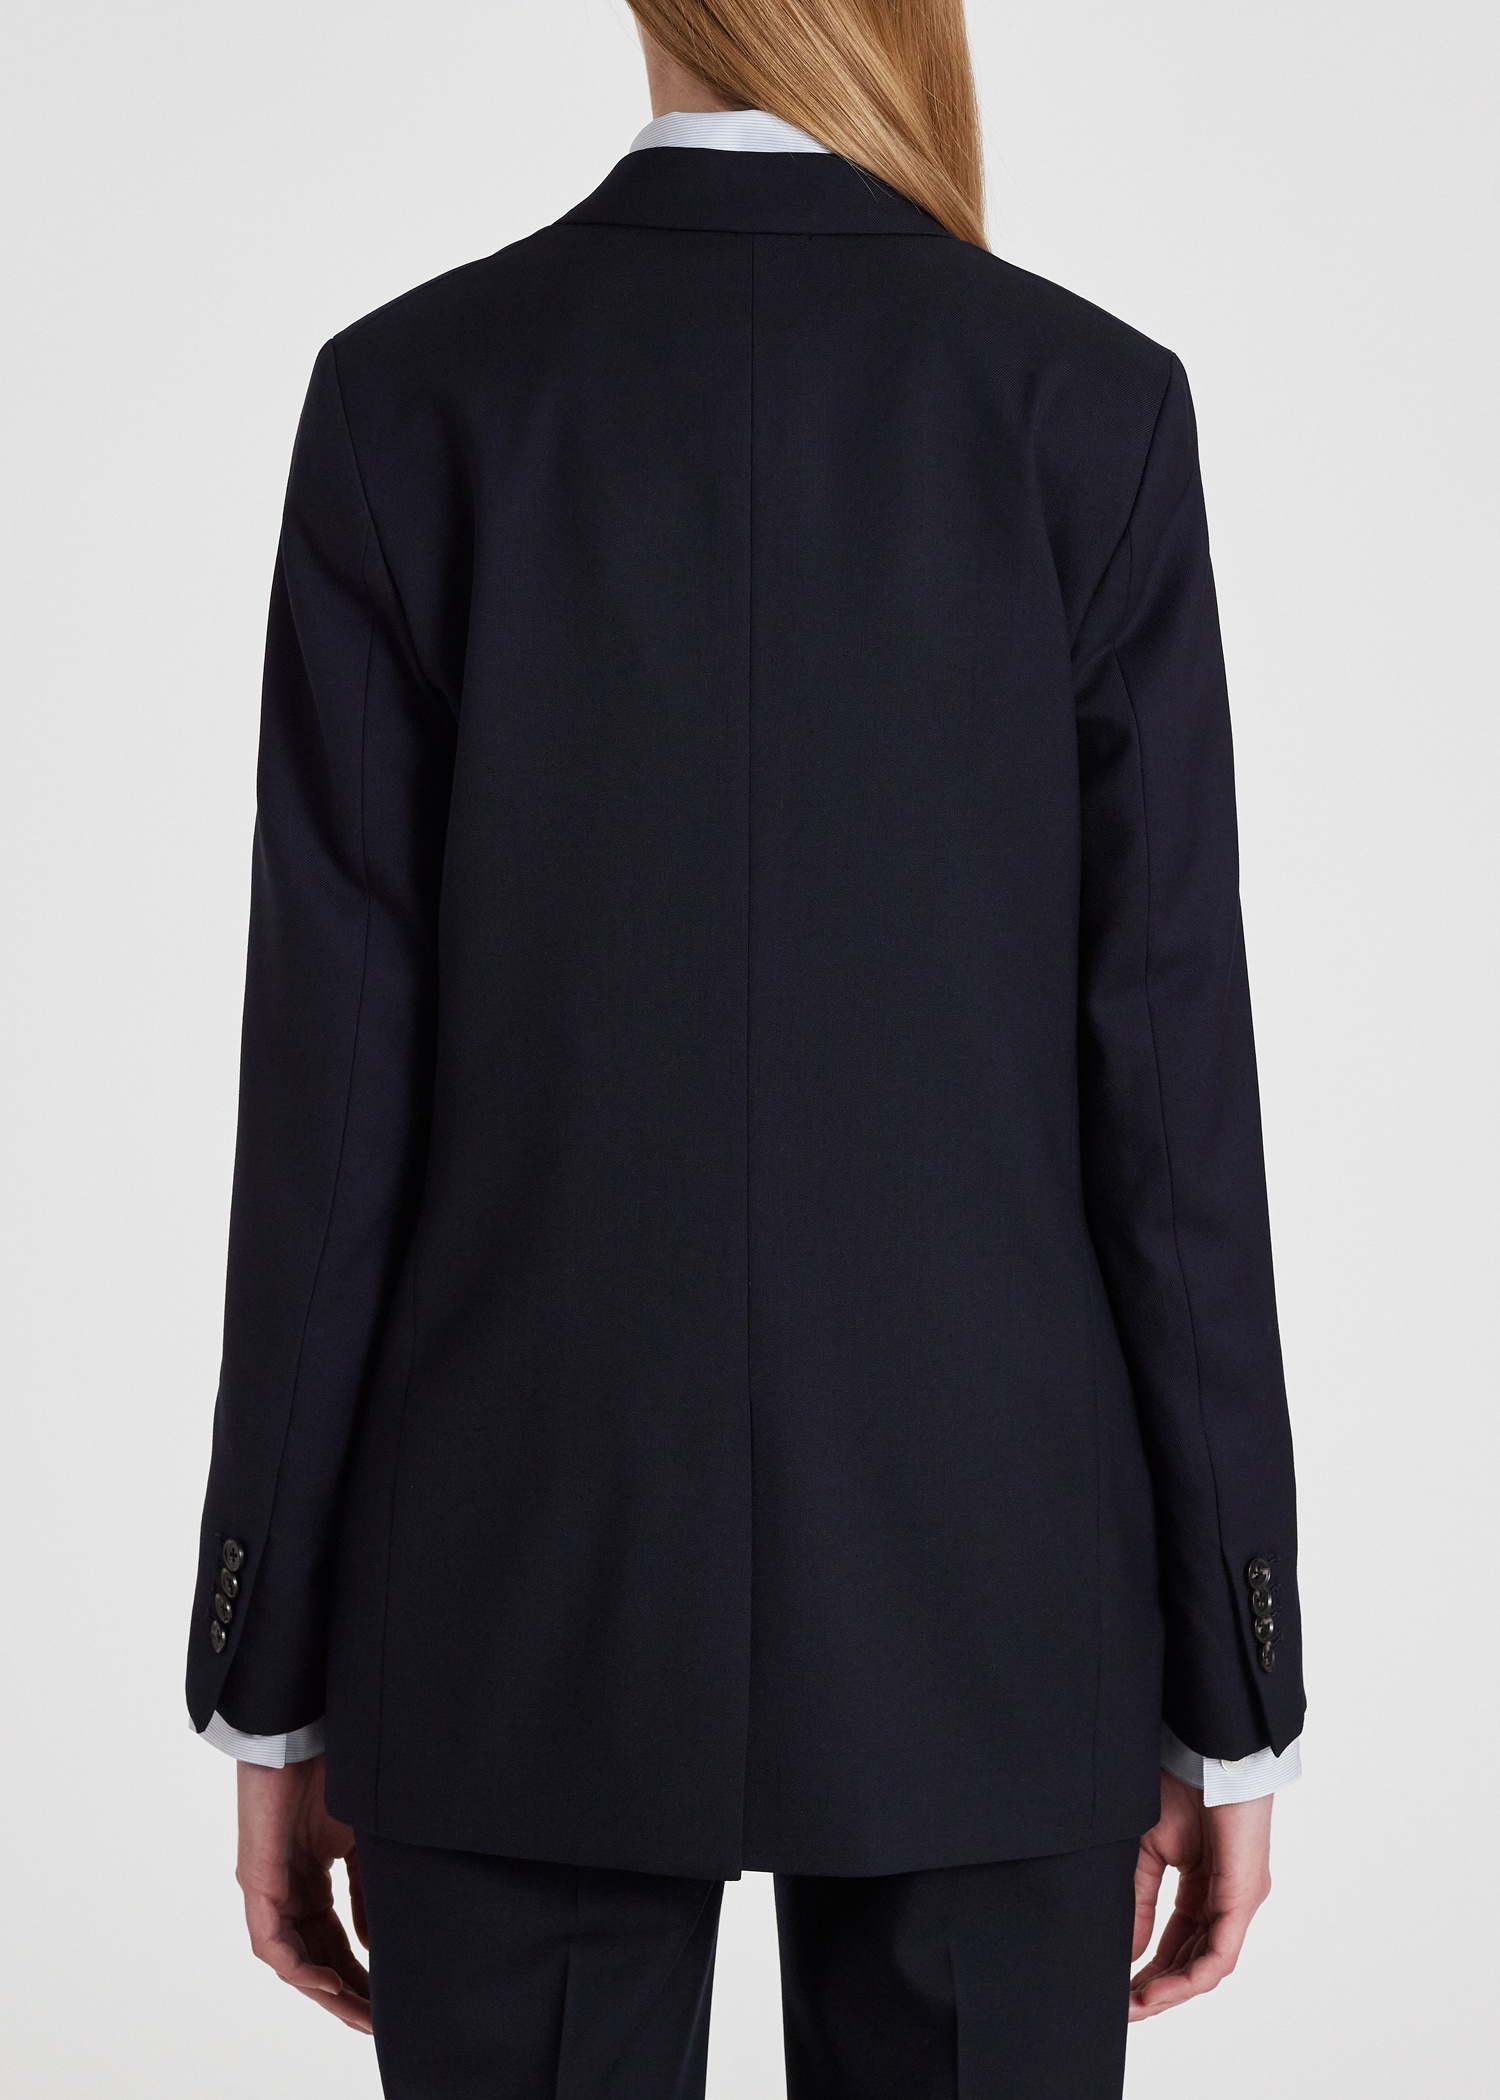 A Suit To Travel In - Women's Dark Navy Wool Travel Blazer - 4